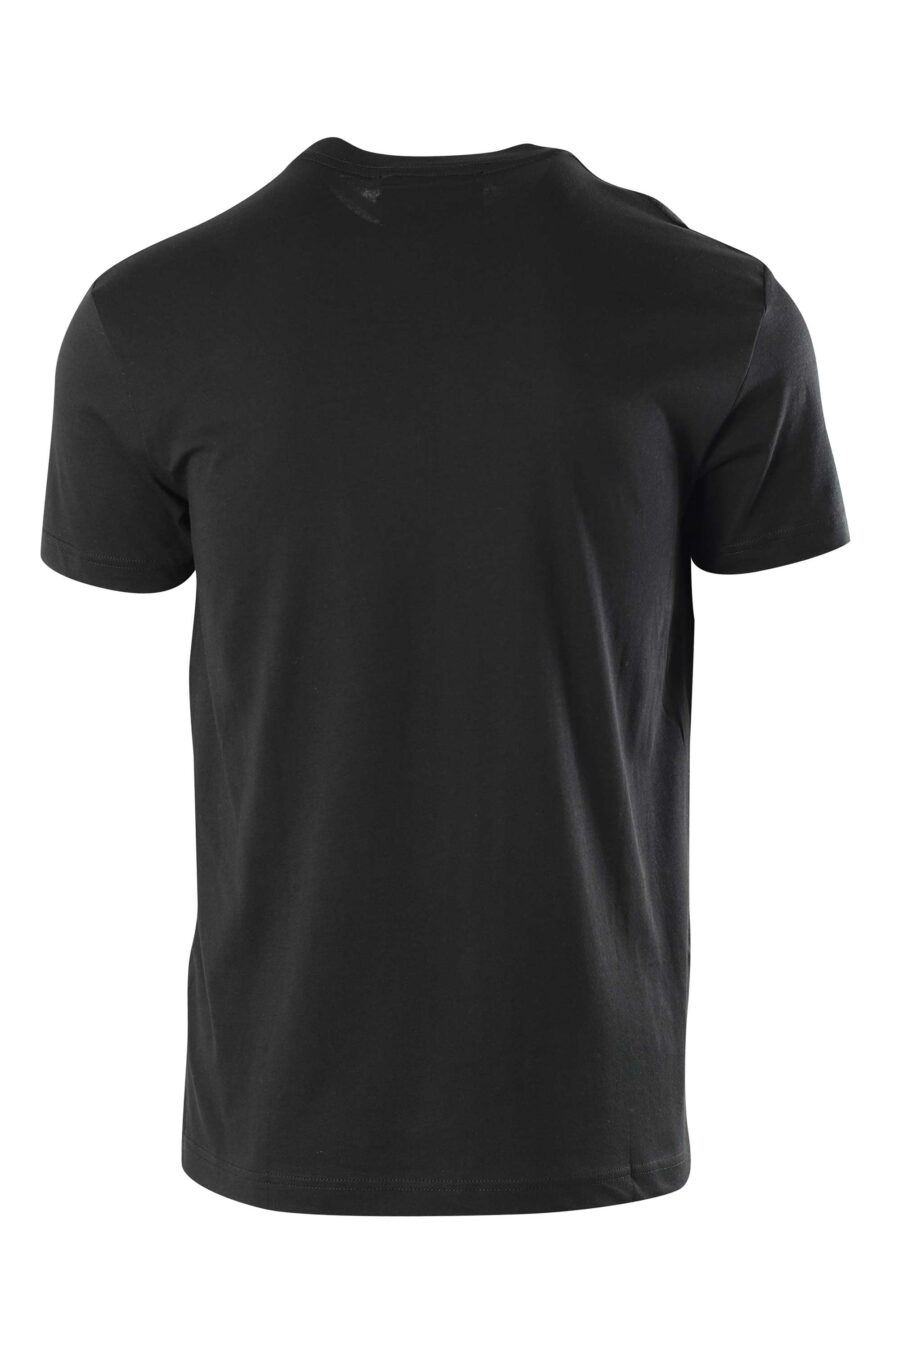 T-shirt preta com logótipo na gola - 8052019325577 2